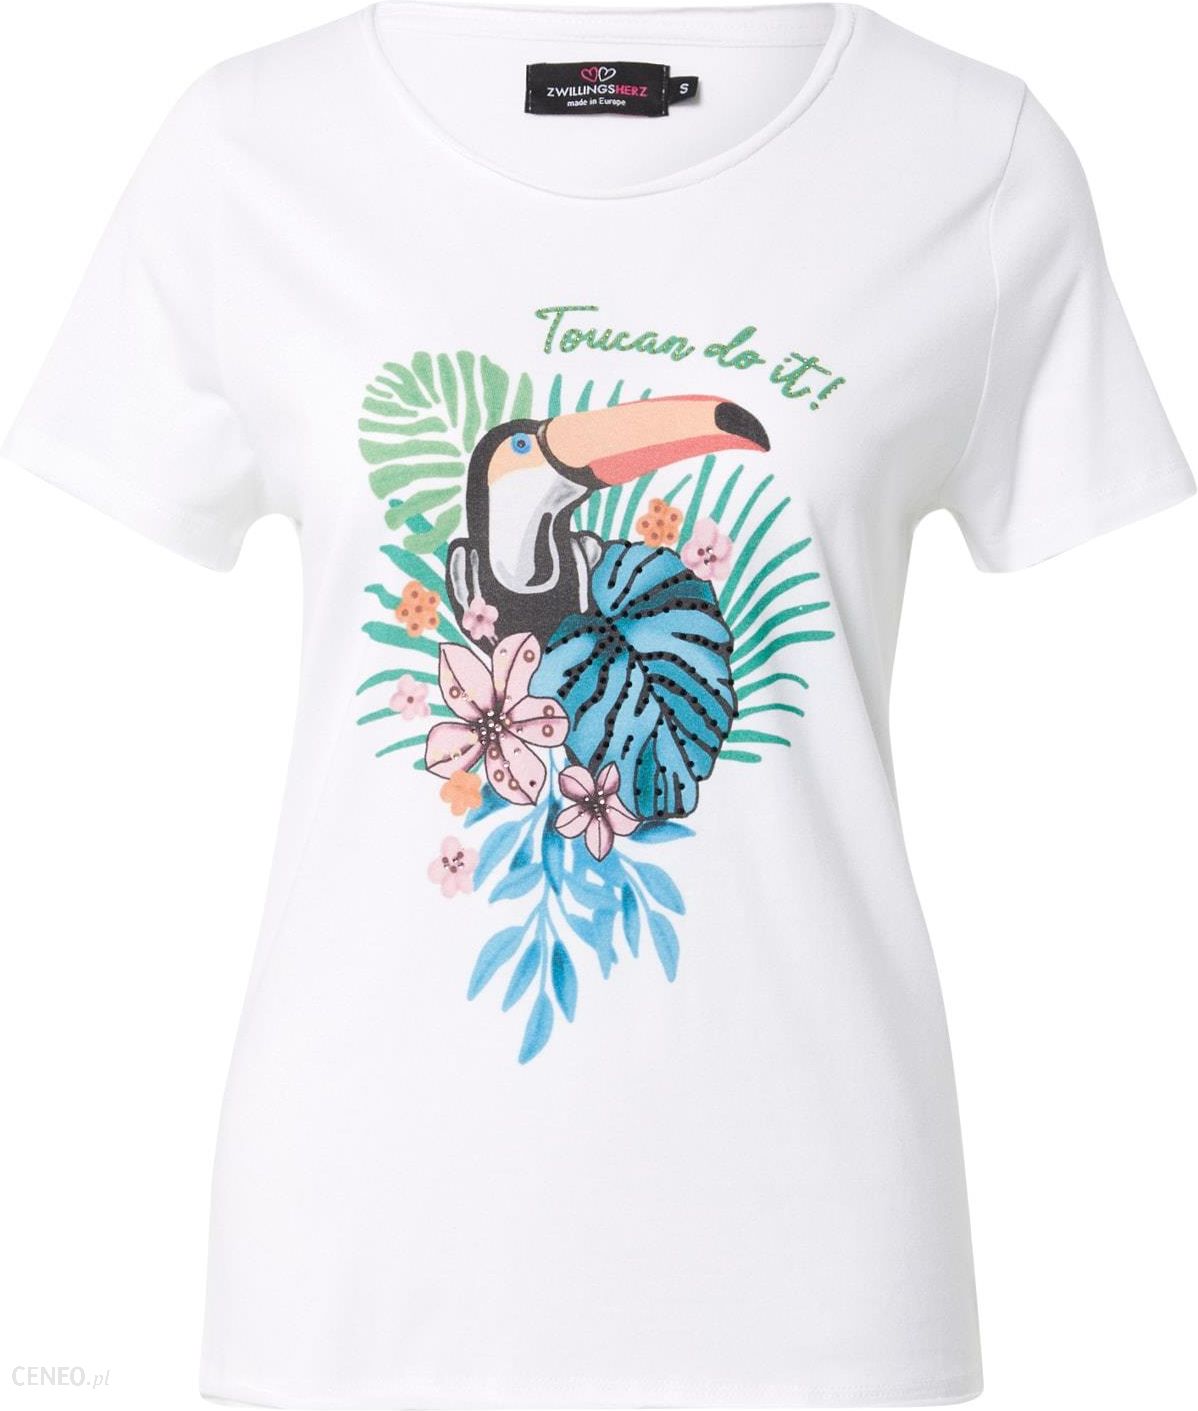 Koszulka - \'Toucan biały i do mieszane opinie kolory it\' Zwillingsherz Ceny /